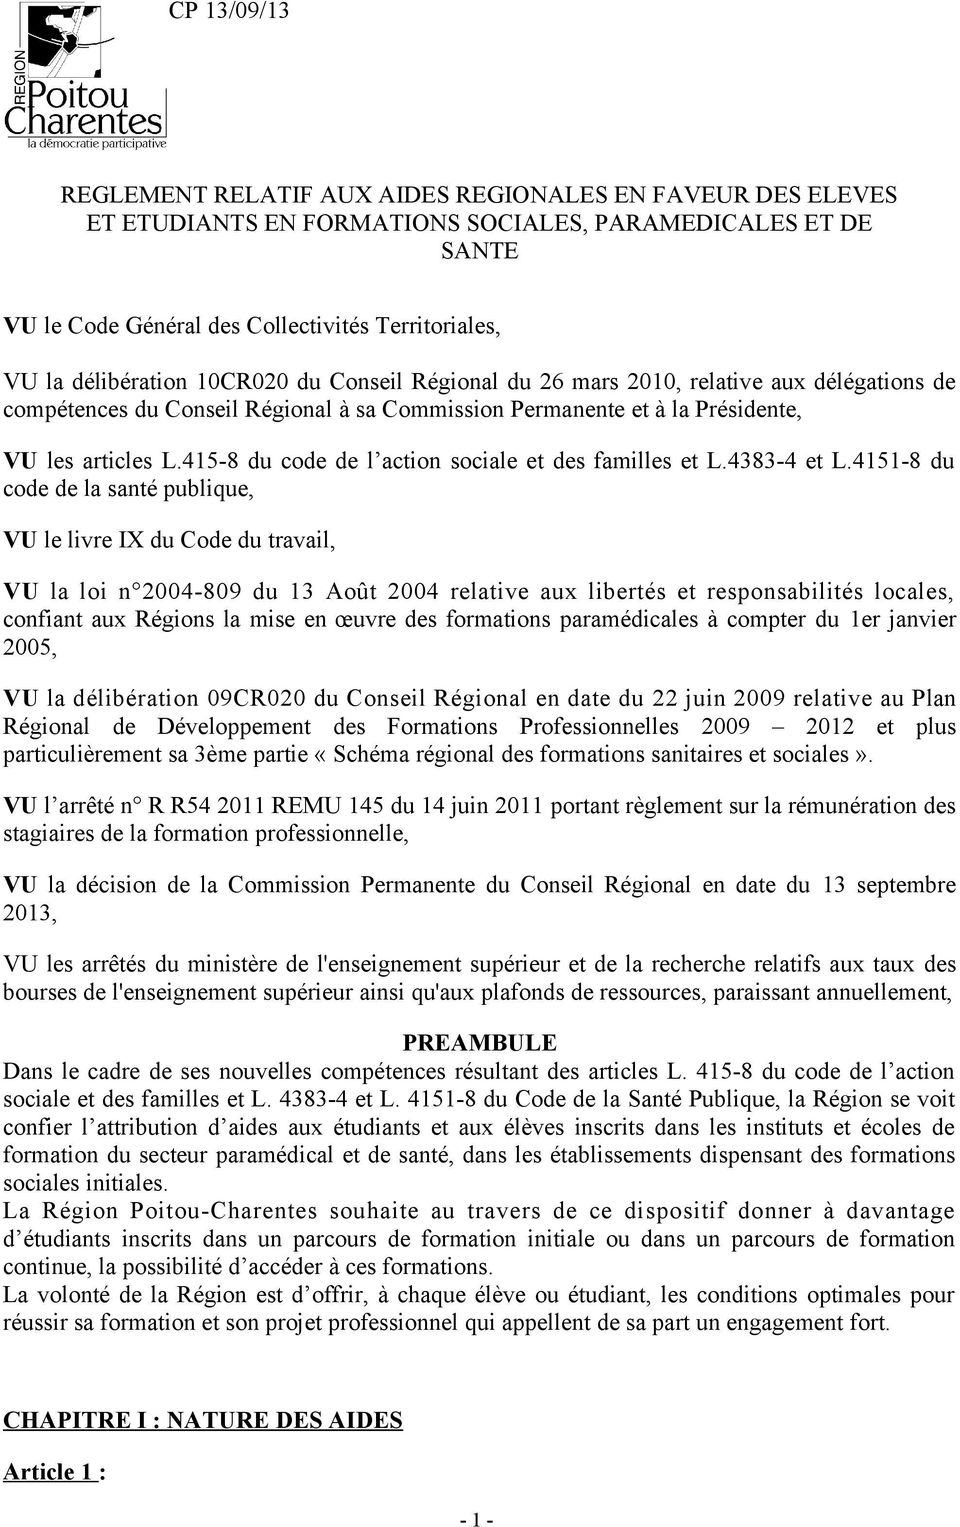 415-8 du code de l action sociale et des familles et L.4383-4 et L.